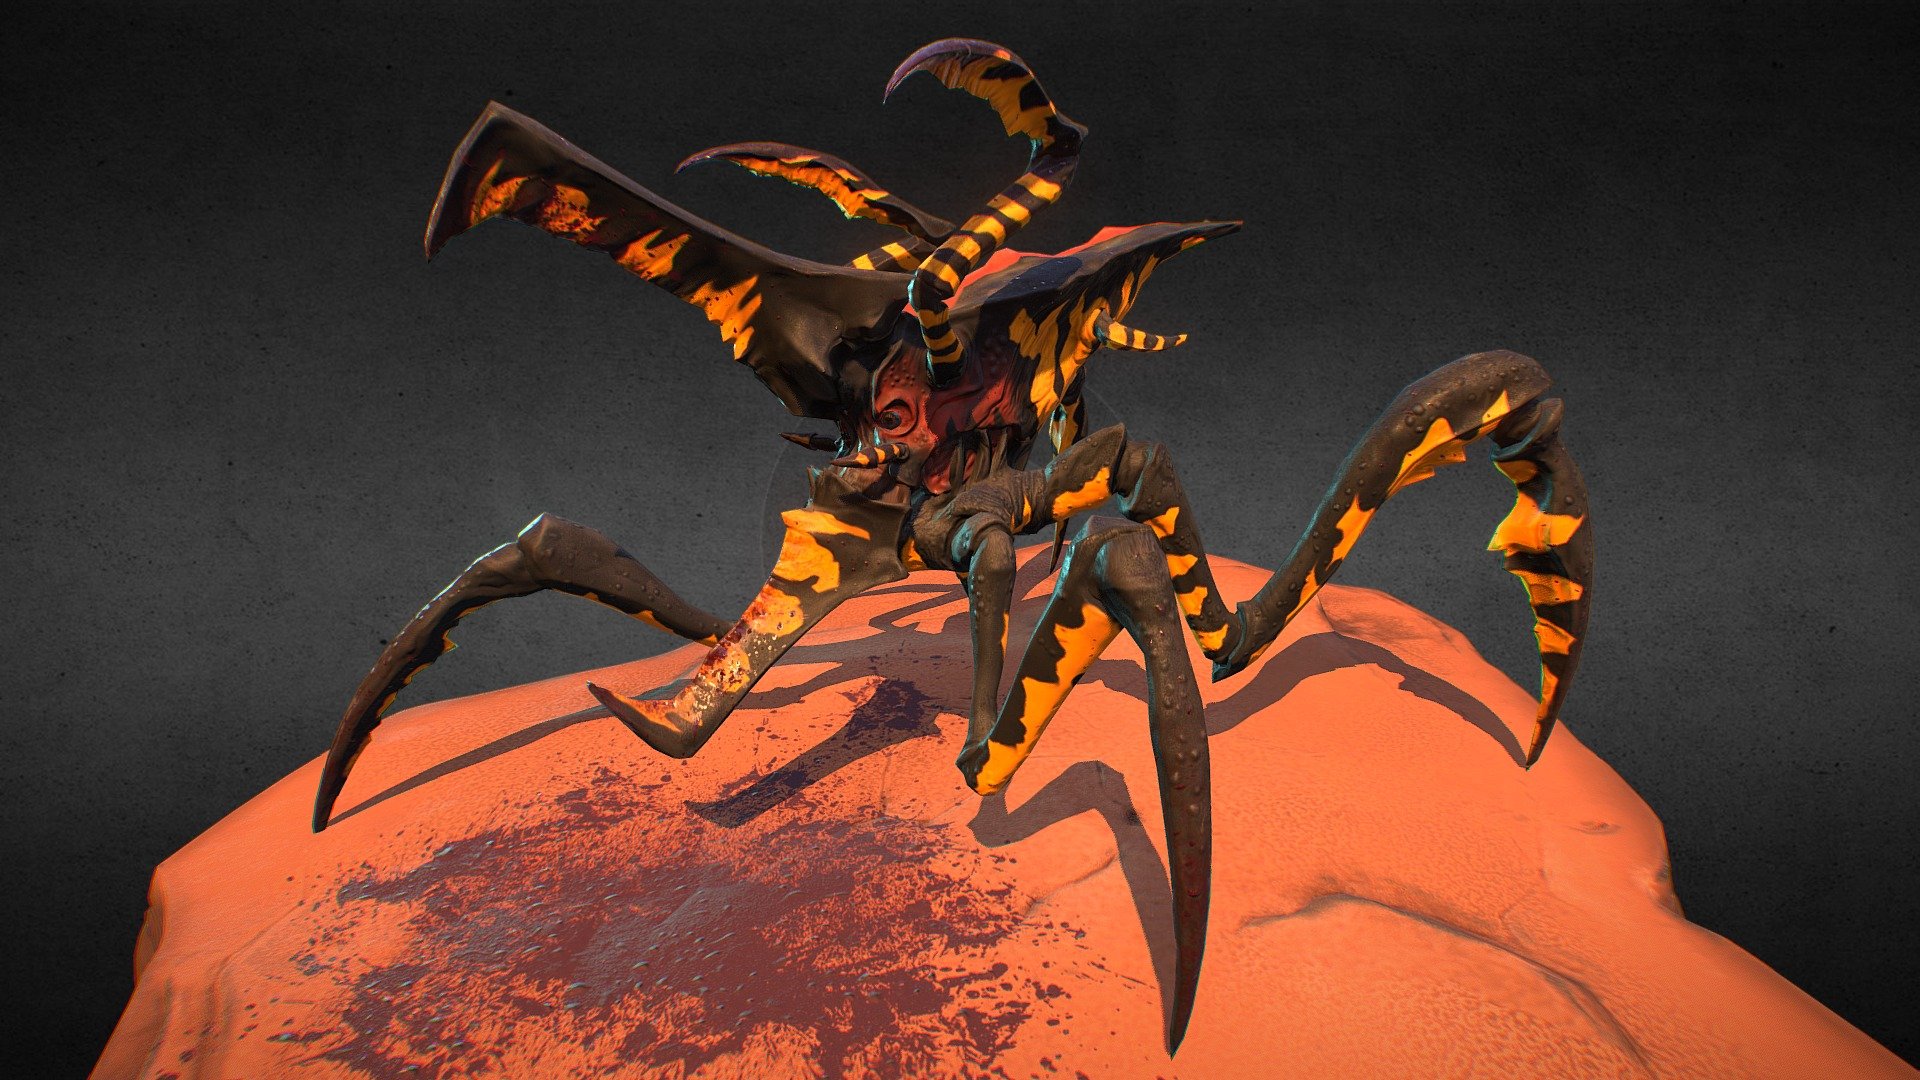 Arachnid - 3D model by adami.